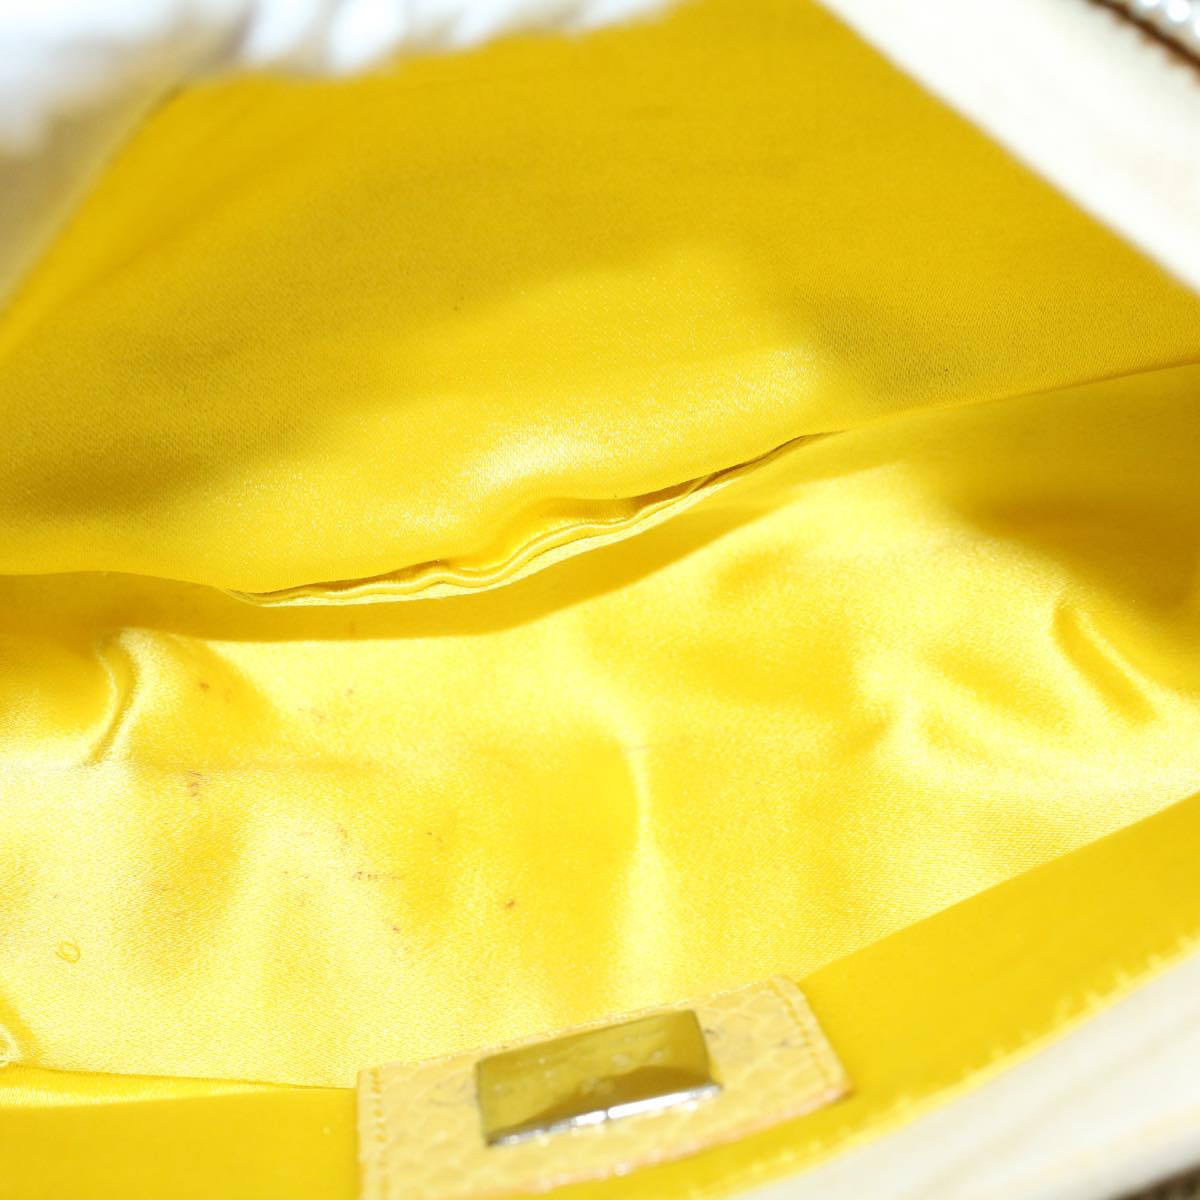 FENDI Mamma Baguette Shoulder Bag Canvas Beige Yellow Auth 54739